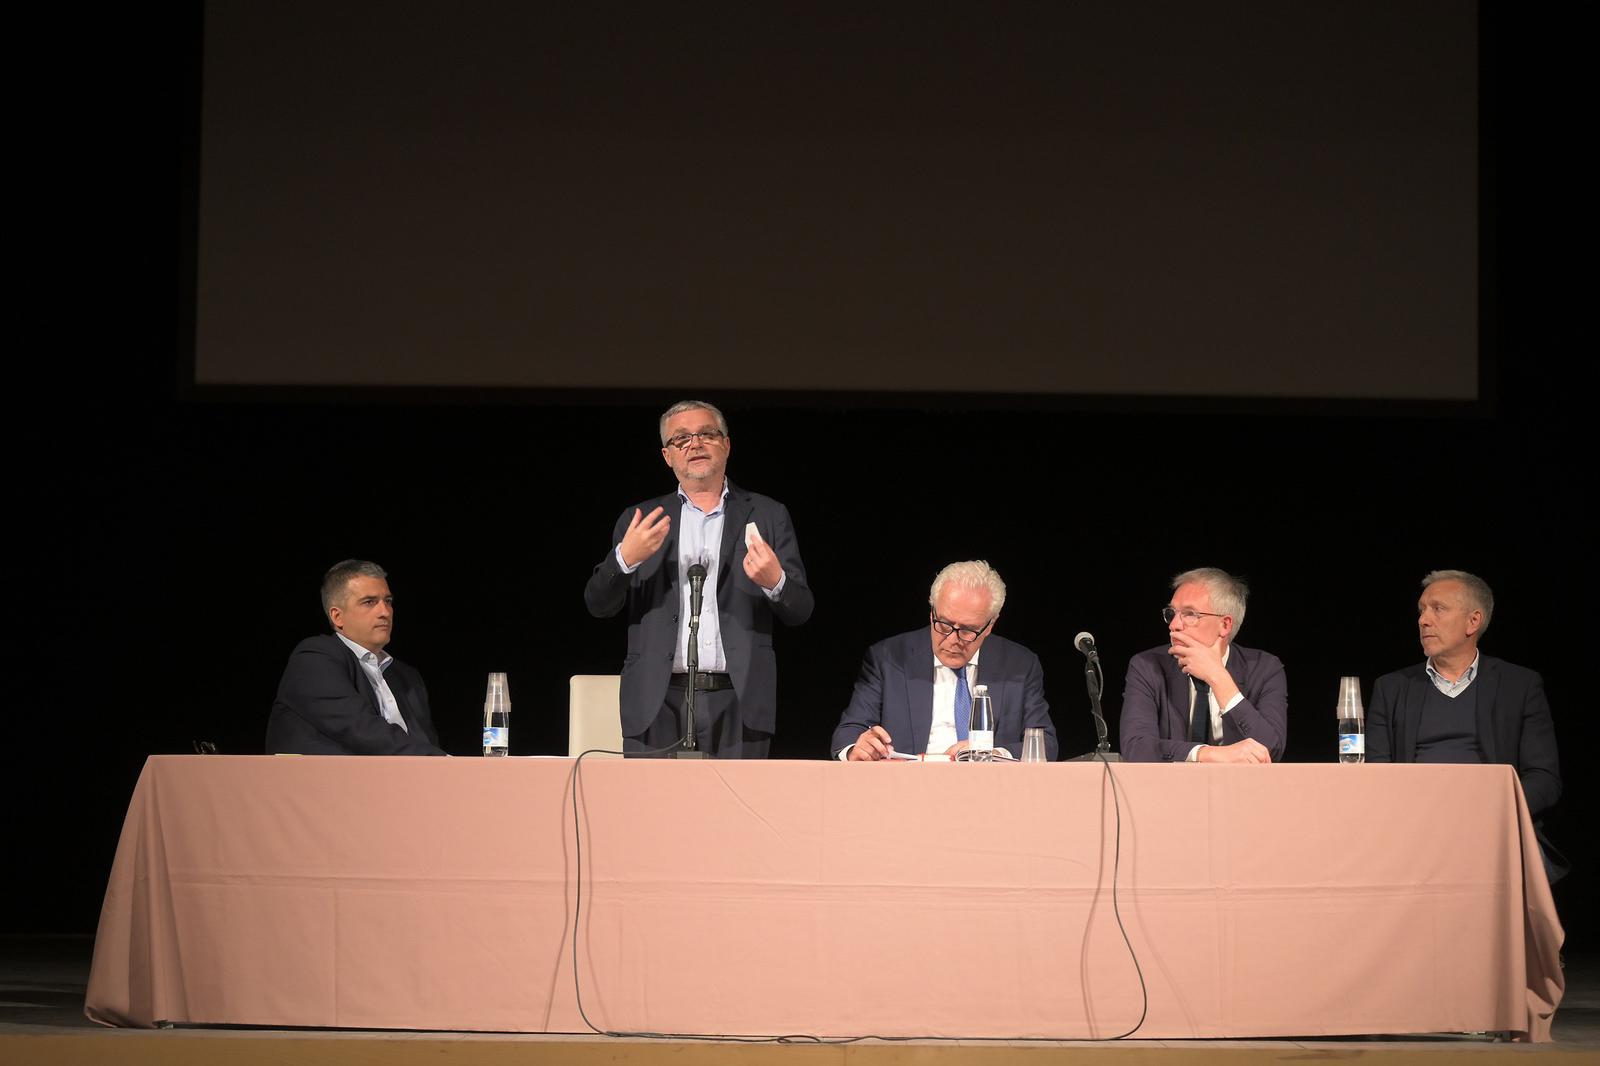 Immagine Metà mandato, Giani: "Al via il dialogo coi territori guardando alla Toscana 2030"